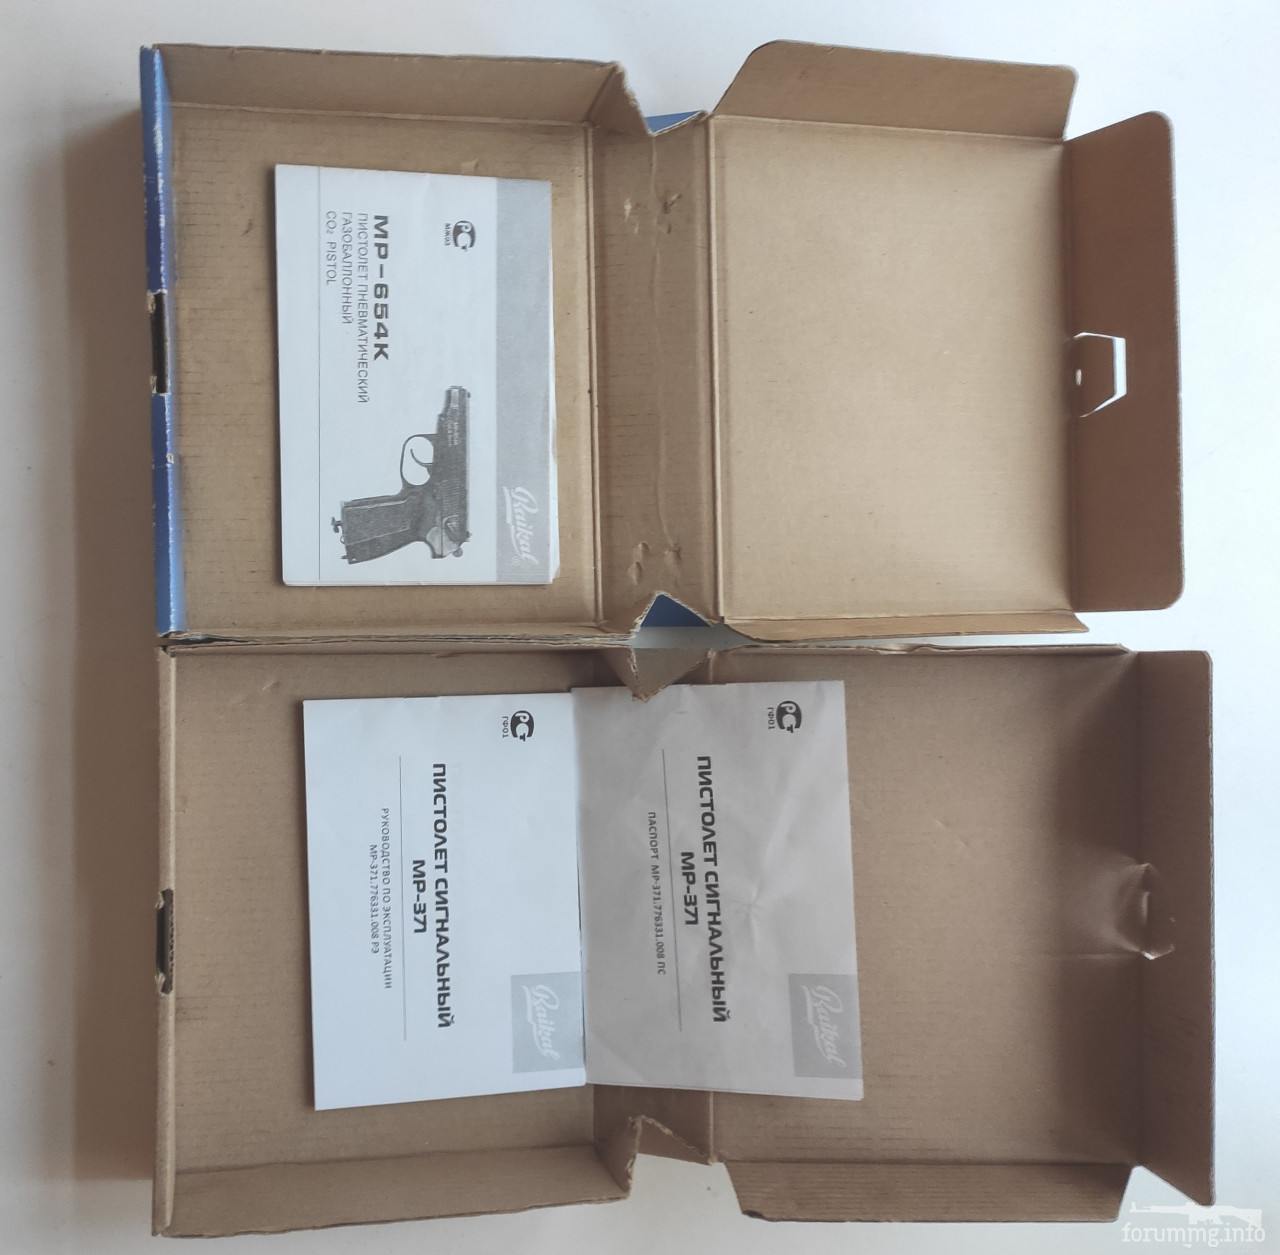 140391 - Продам коробки с поспартами для МР-654 и МР-371